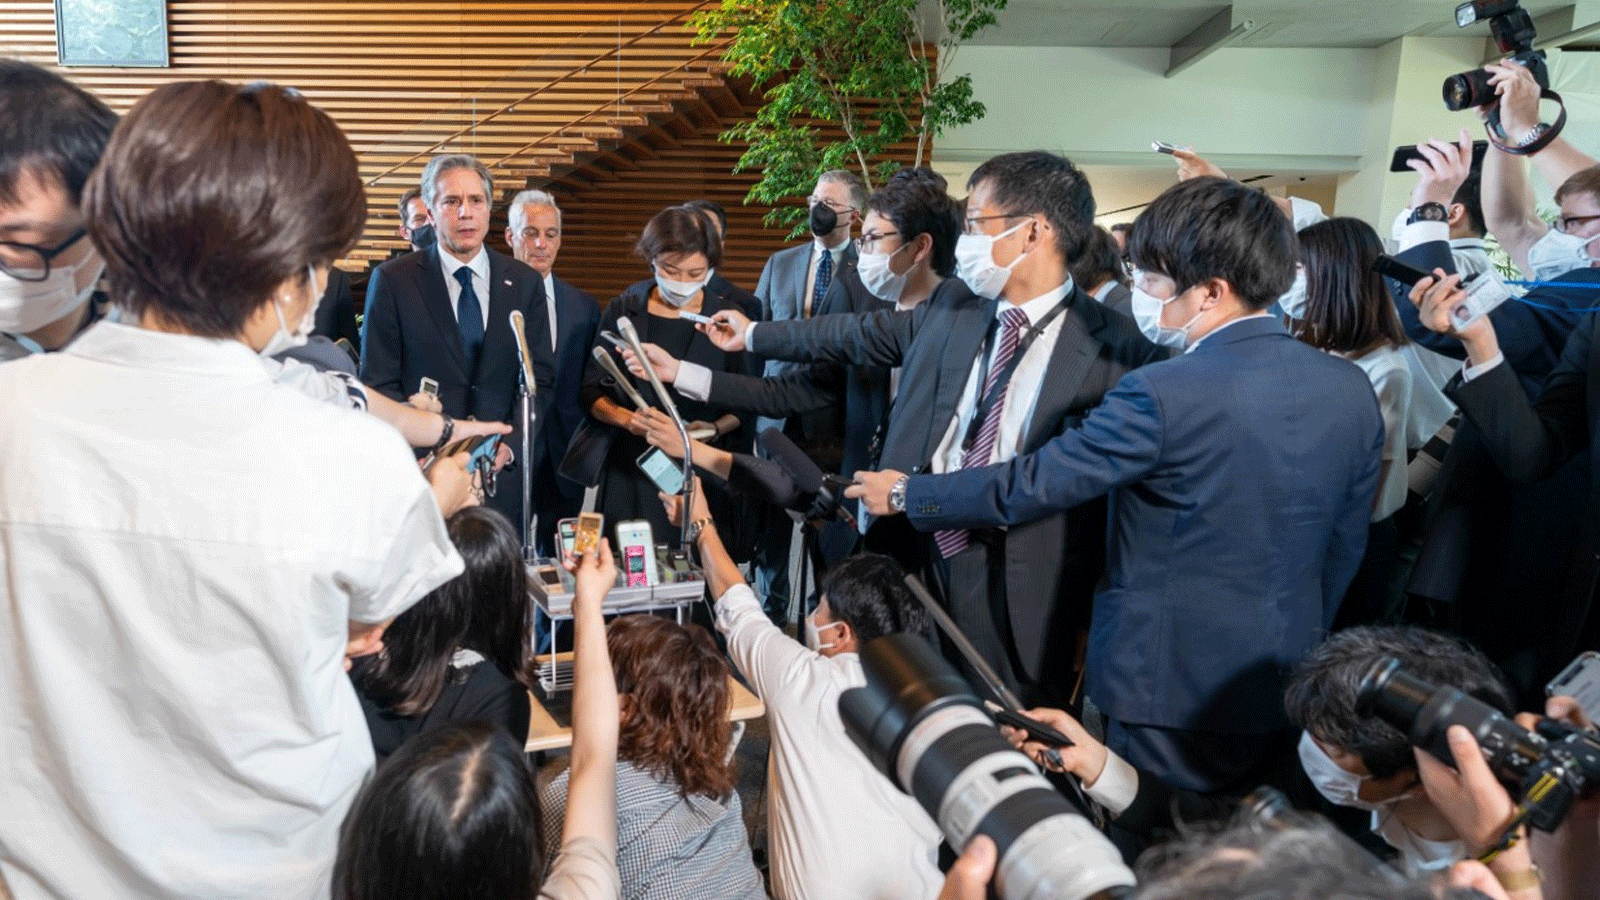 وزير الخارجية الأميركي أنتوني بلينكن يتحدث في اليابان